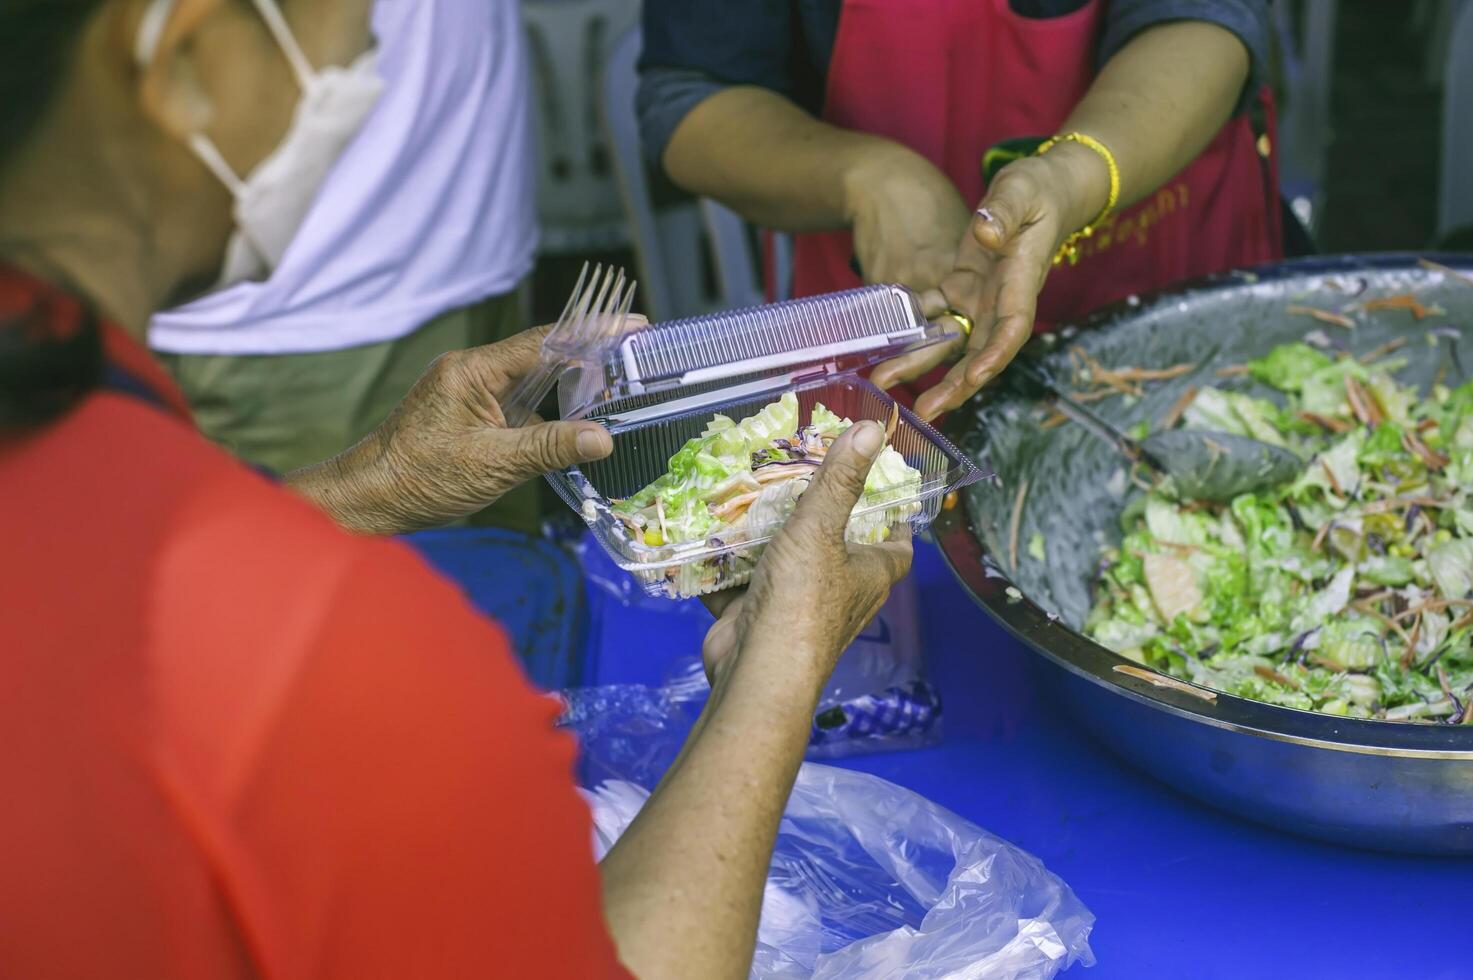 matning begrepp hemlös människor erbjudande fri mat från utomhus- frivilliga. foto